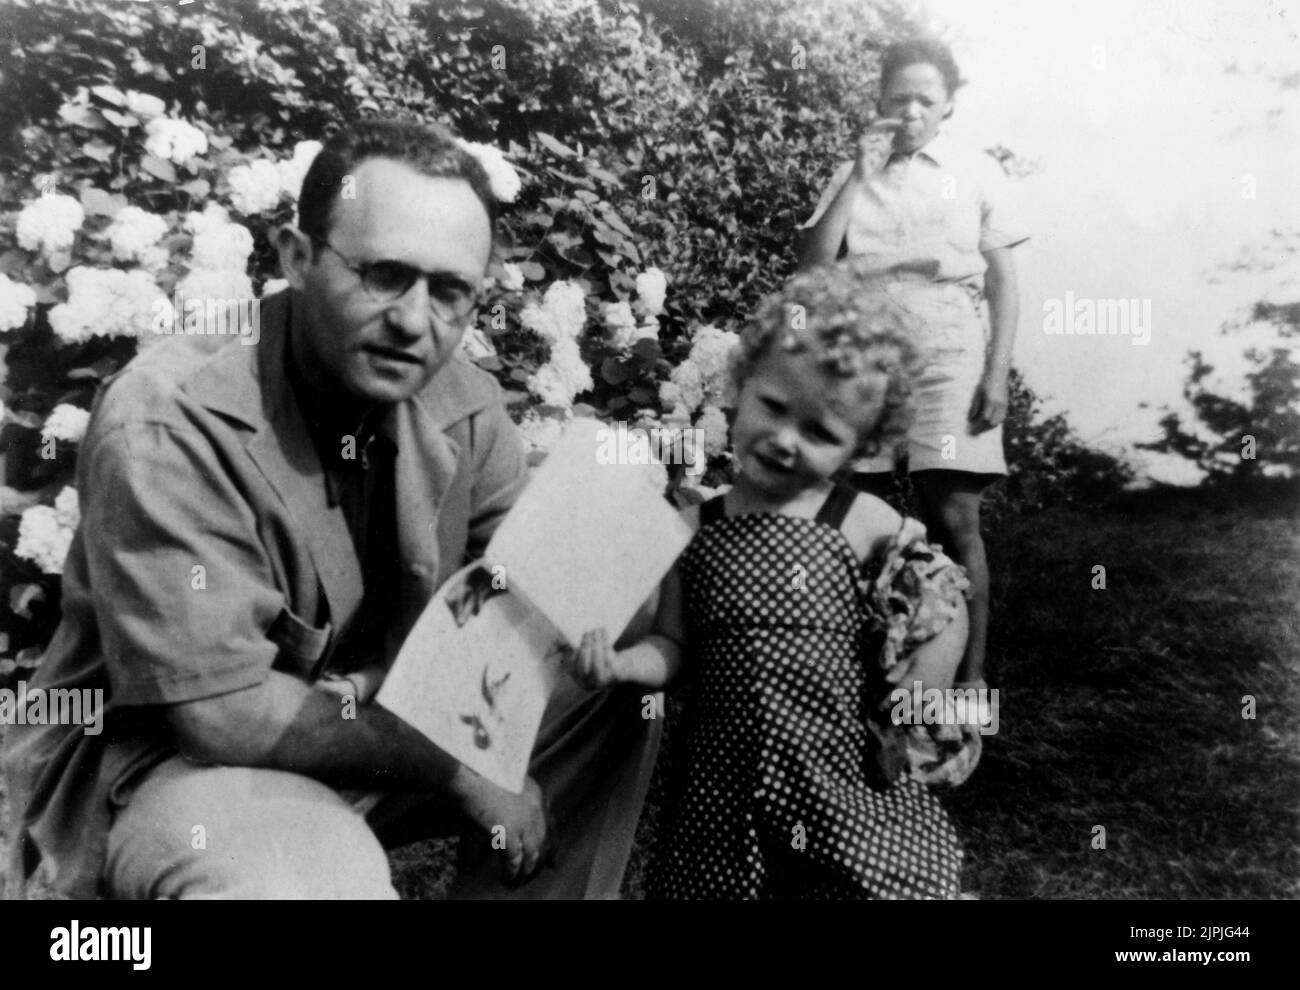 1940 CA., Etats-Unis : le célèbre professeur de théâtre et fondateur de l'acteur Studio LEE STRASBERG ( 1901 - 1982 ) avec sa fille SUSAN STRASBERG ( 1938 - 1999 ) Futur film et scène célèbre actrice - REGISTA TEATRALE - TEATRO - THEATRE - CINÉMA - FILM - INSEGNANTE DI RECITAZIONE - attice - personnalité personnalités célébrités acteurs quand était jeune petit garçon enfant enfants bébés - celeità personalità attori da piccoli piccolo bambini bambino giovani giovane - Occhiali - lunettes --- Archivio GBB Banque D'Images